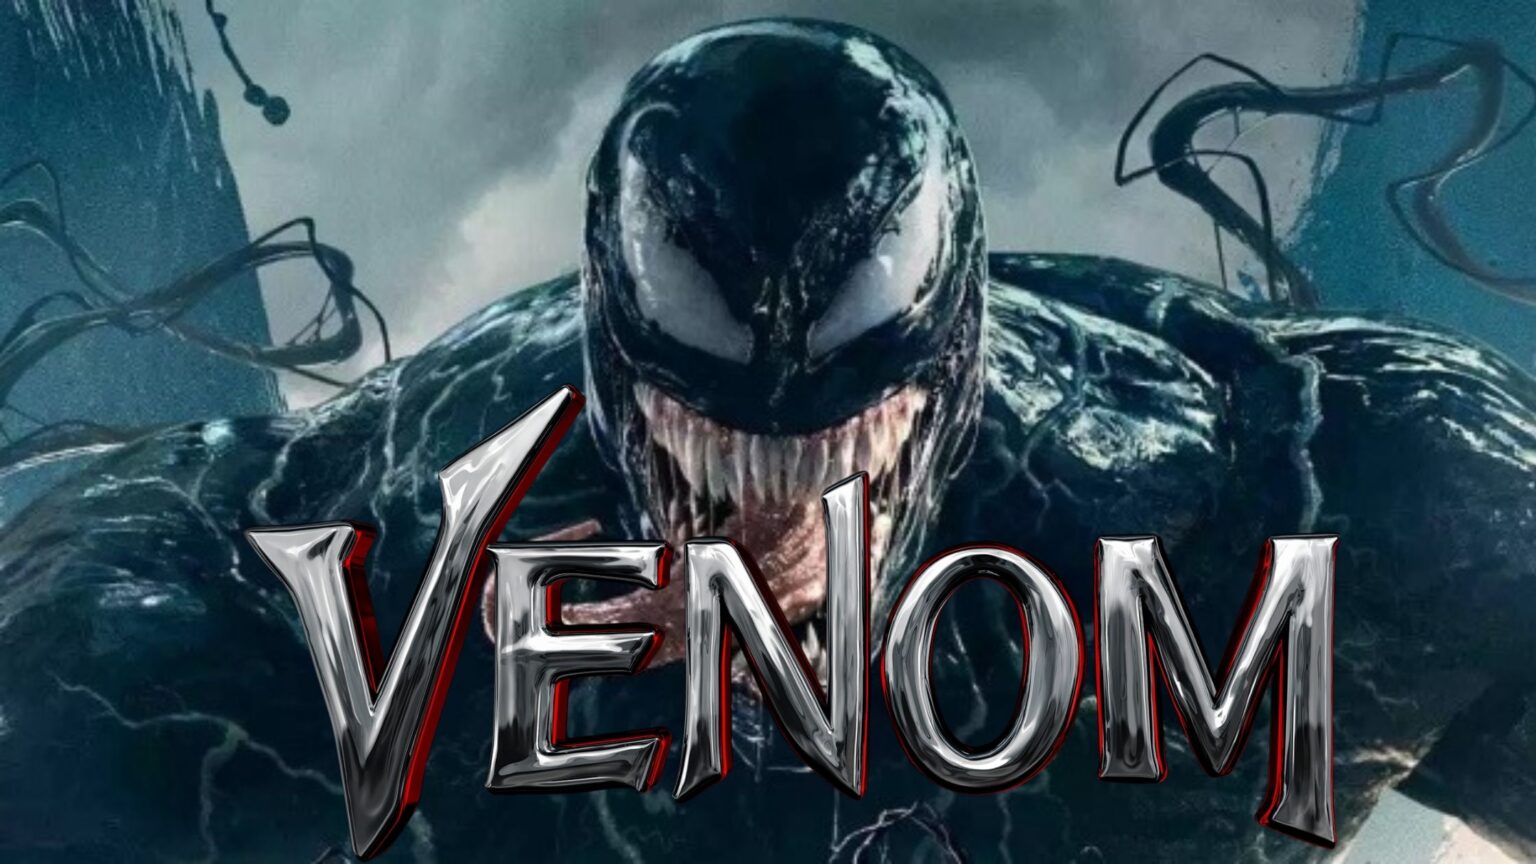 watch venom 2018 free online full movie no download putlocker